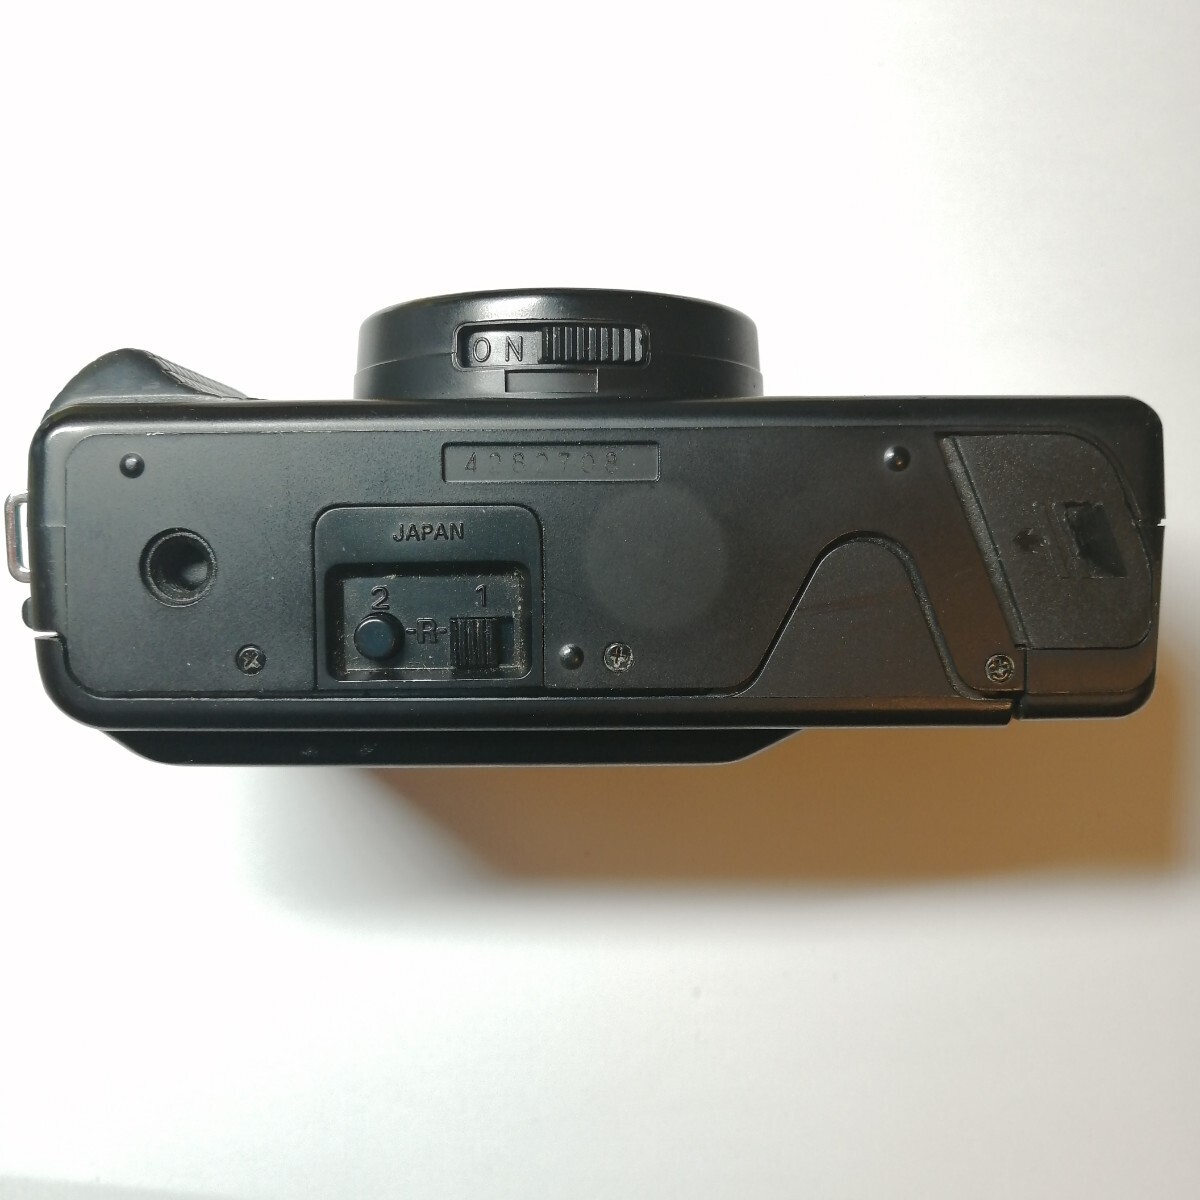  исправно работает прекрасный товар Nikon L35AD2pi kai chi#708 compact пленочный фотоаппарат 1 иен старт 